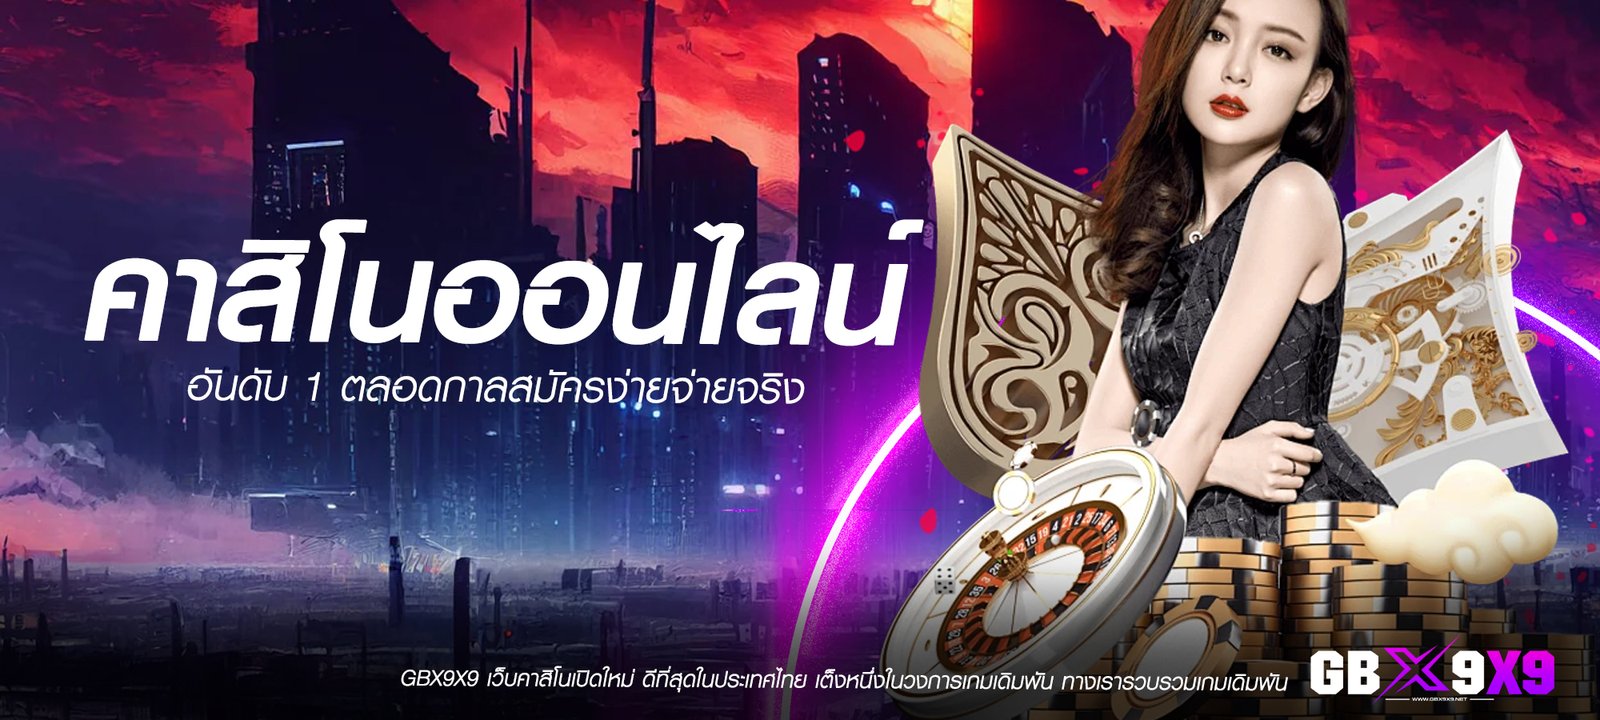 คาสิโนออนไลน์อันดับ 1 เกมลิขสิทธิ์แท้ ดีที่สุดในประเทศไทย